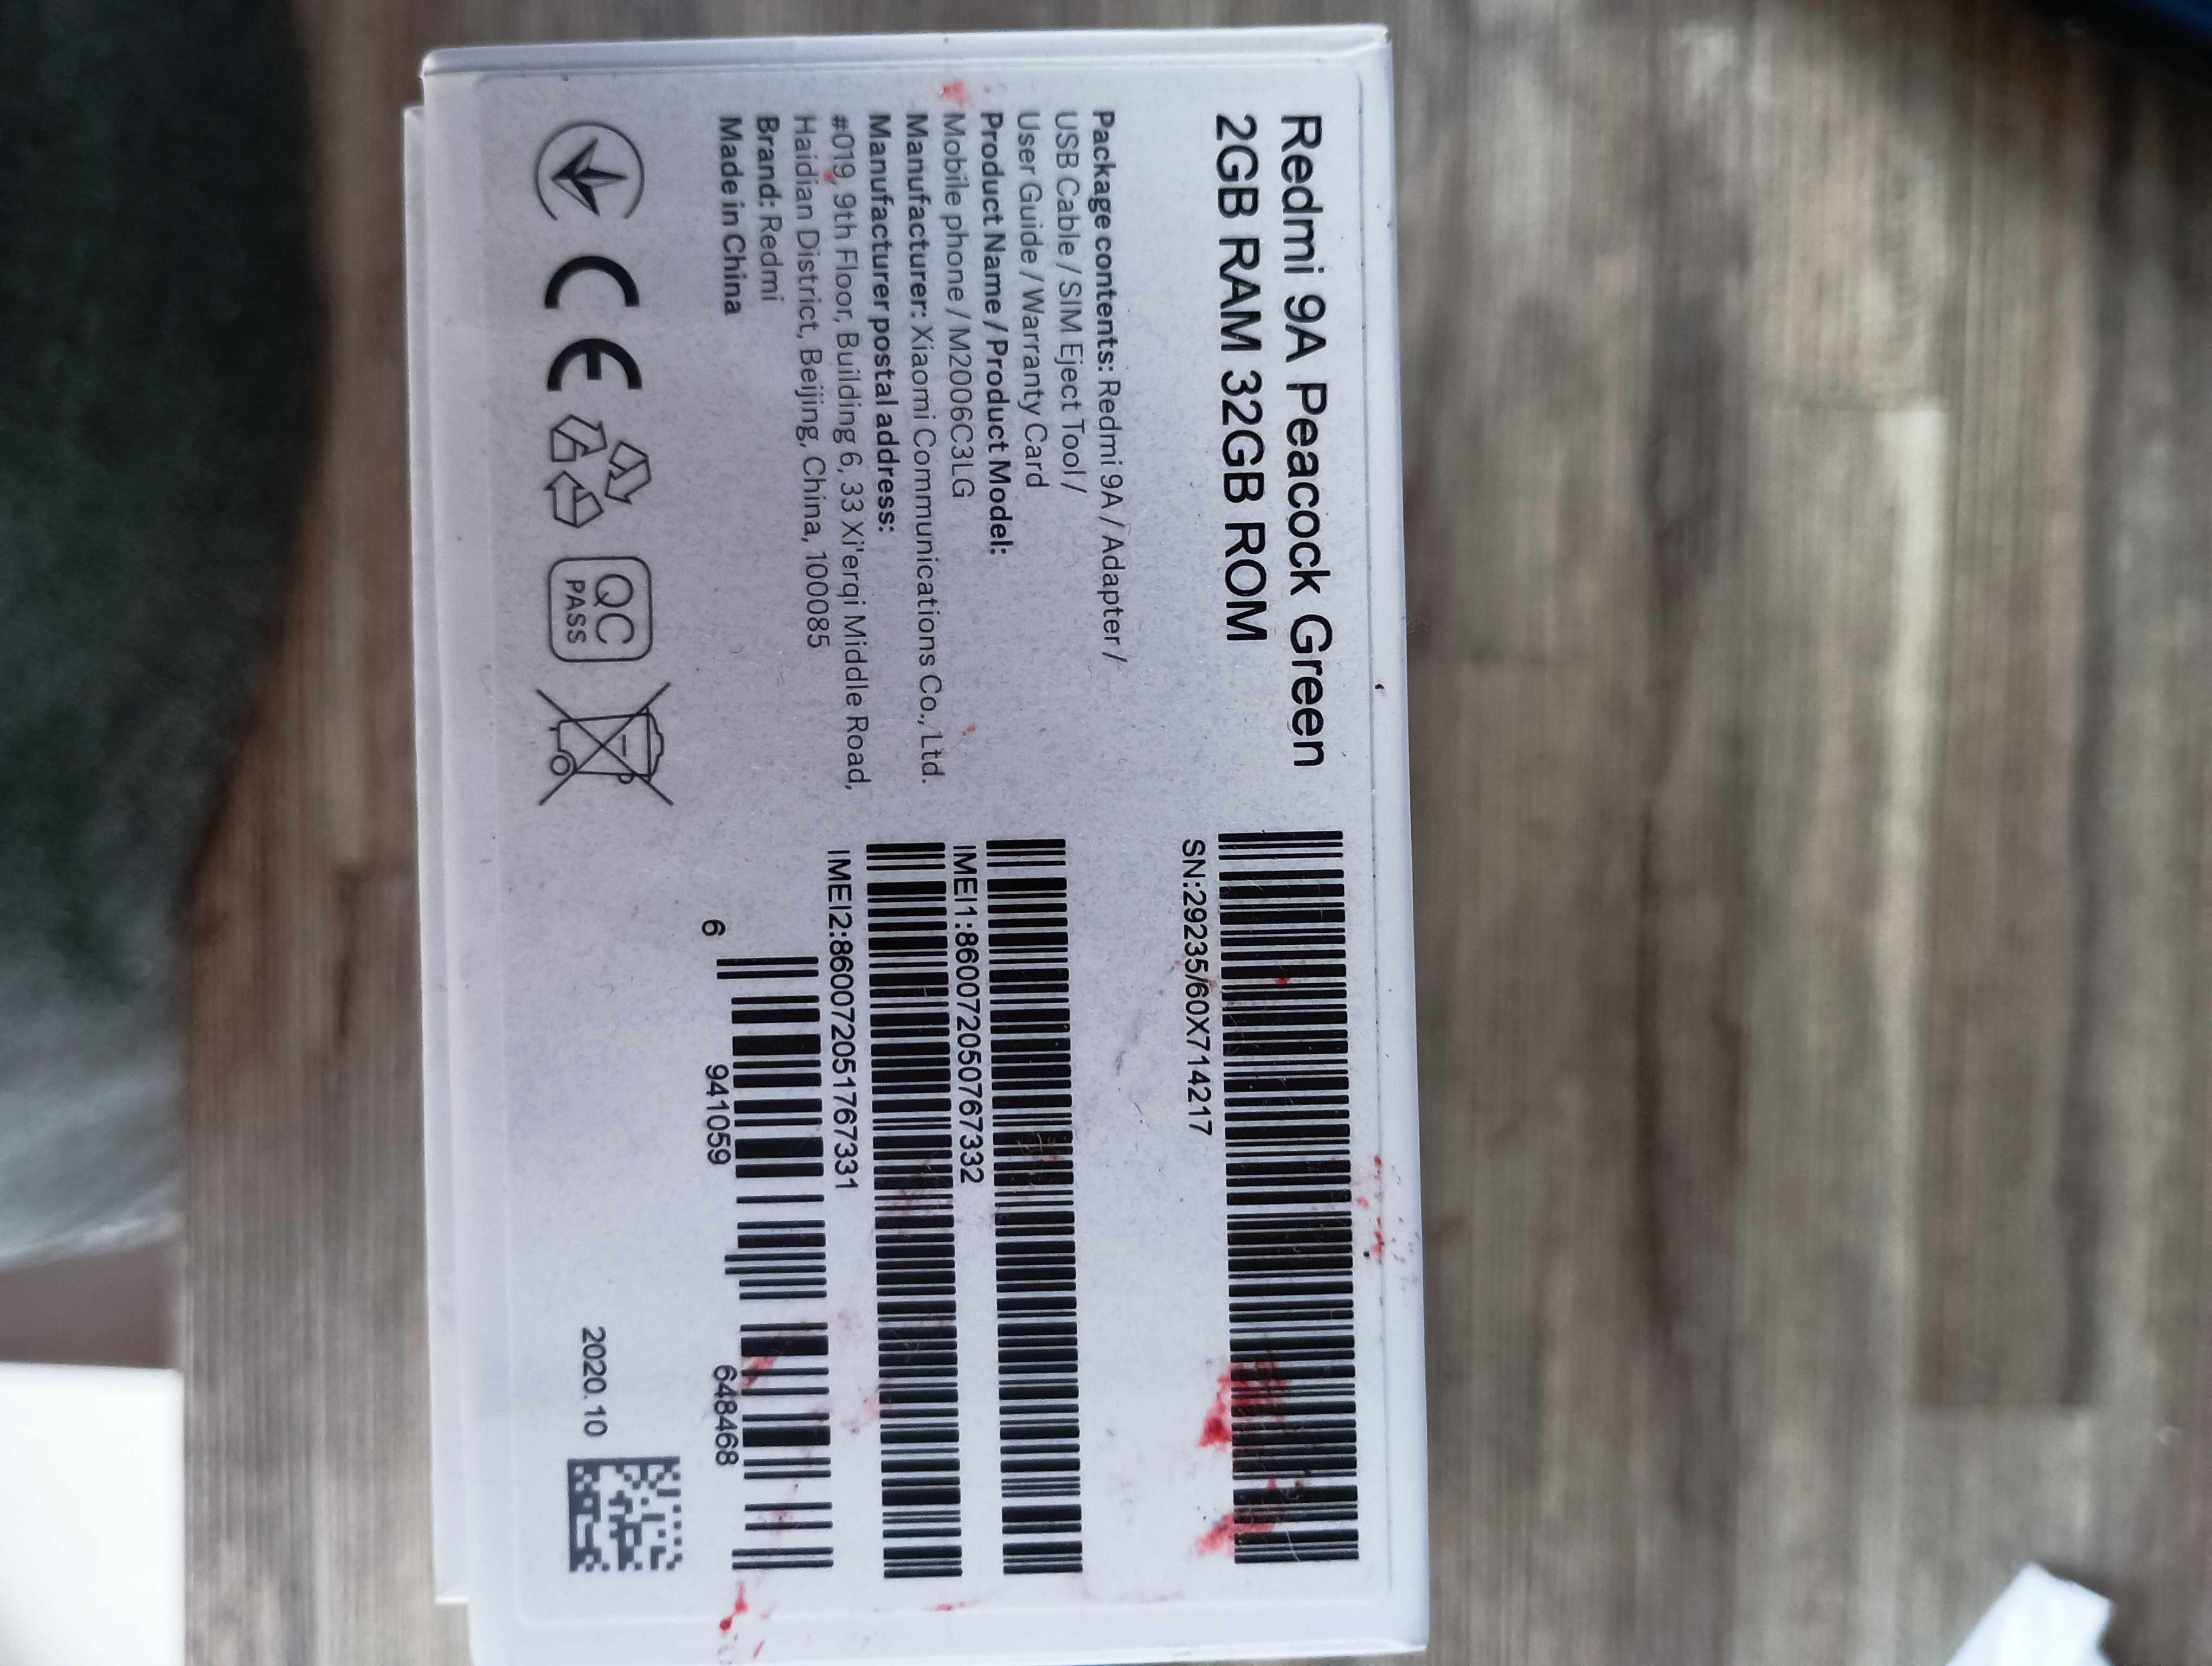 Xiaomi Redmi 9A 32GB